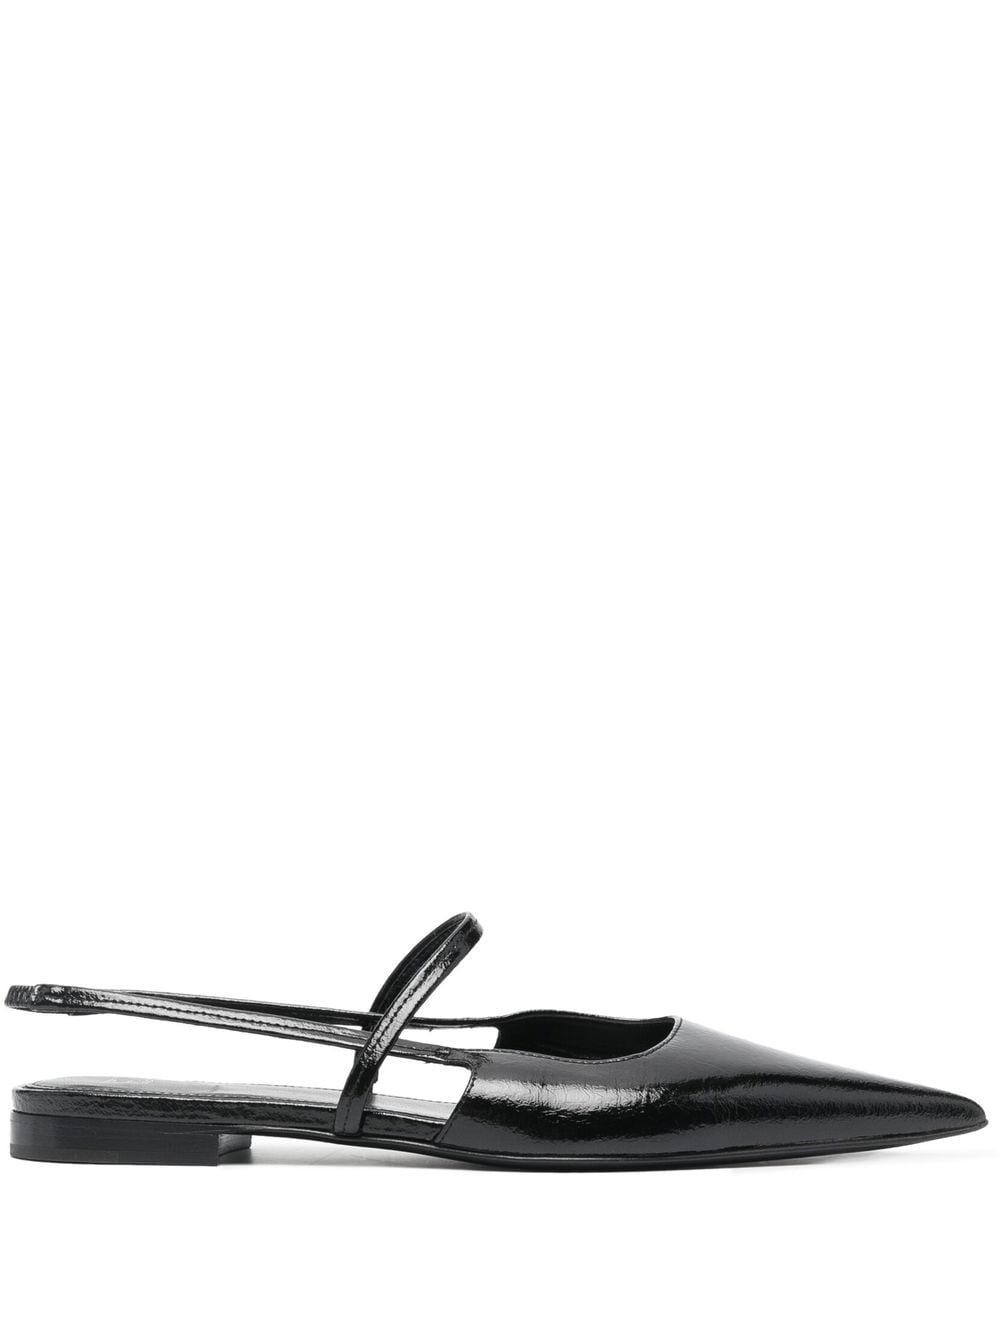 TOTEME The Sharp slingback flat sandals - Black von TOTEME